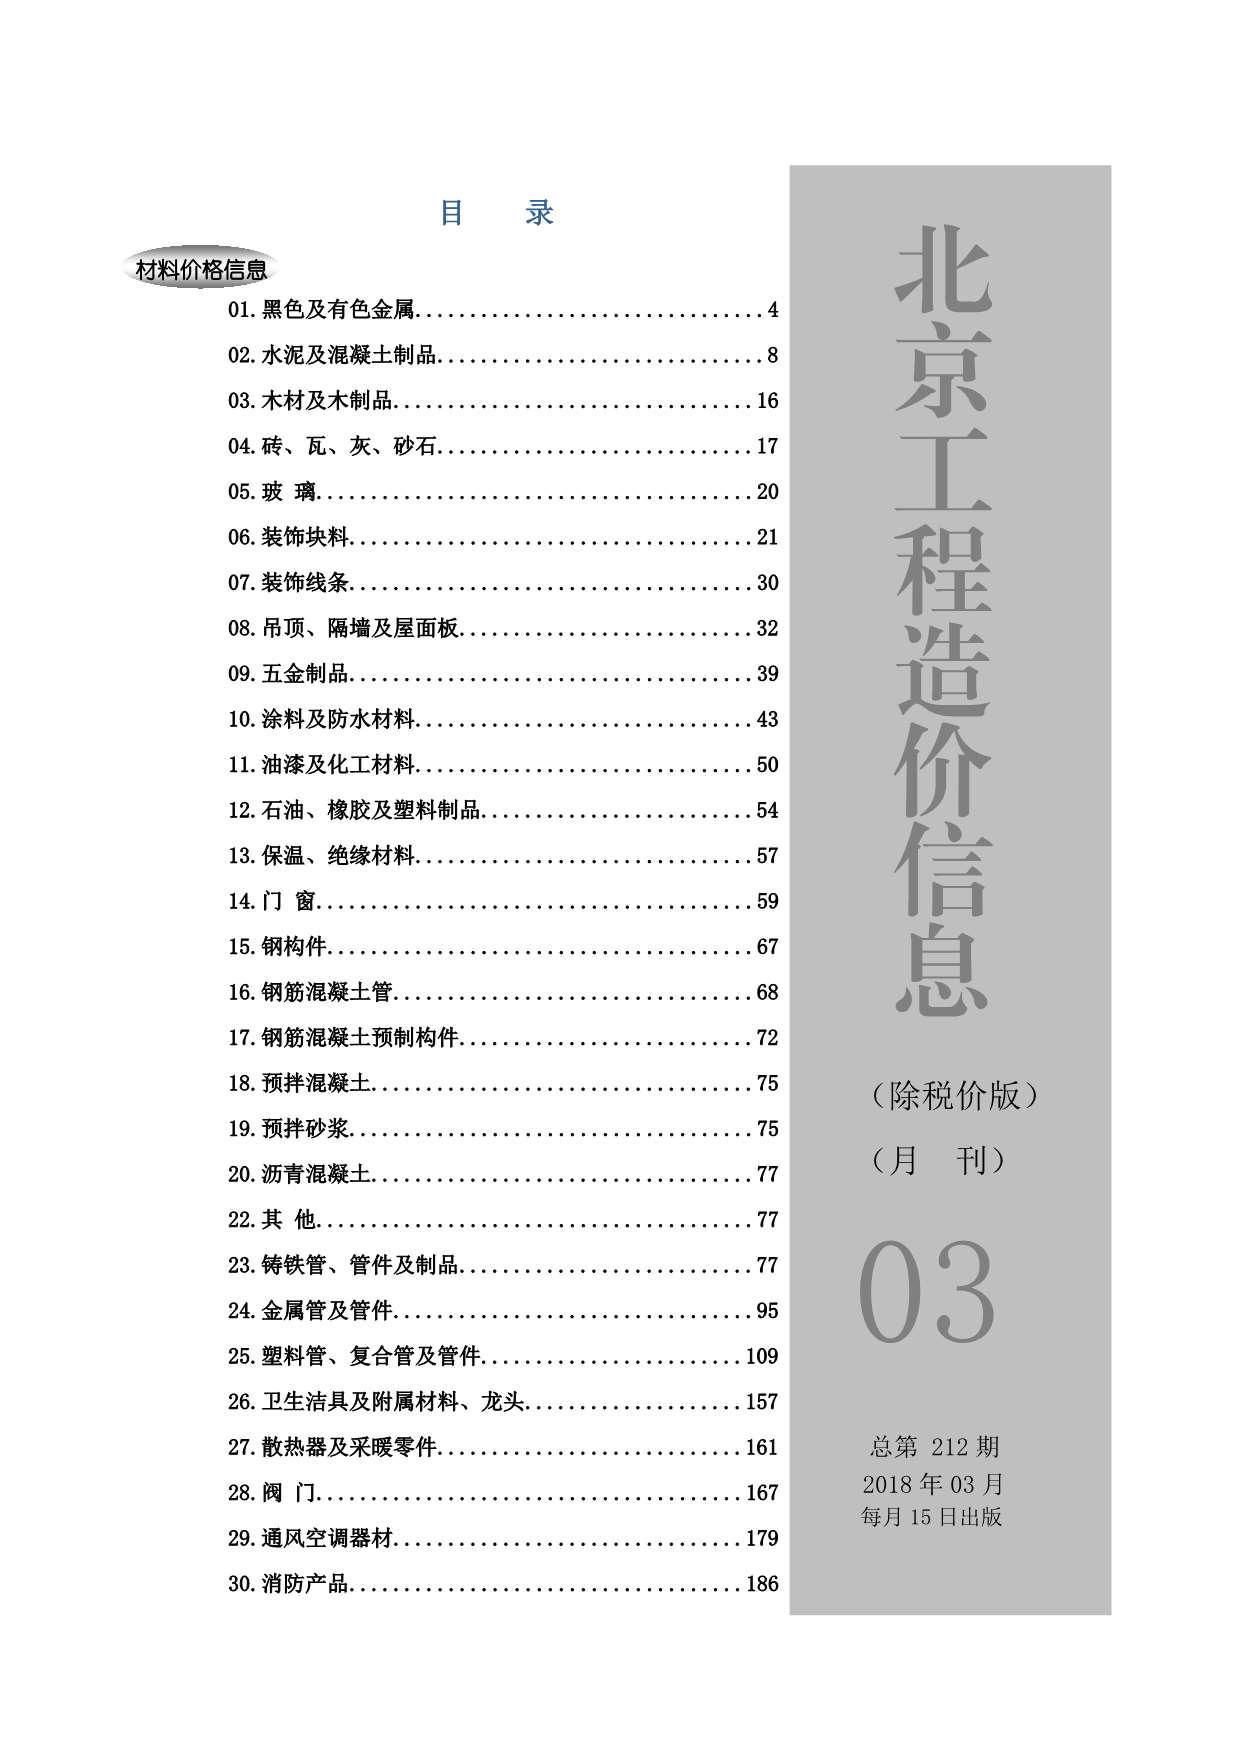 2018年3期北京除税价版造价库期刊